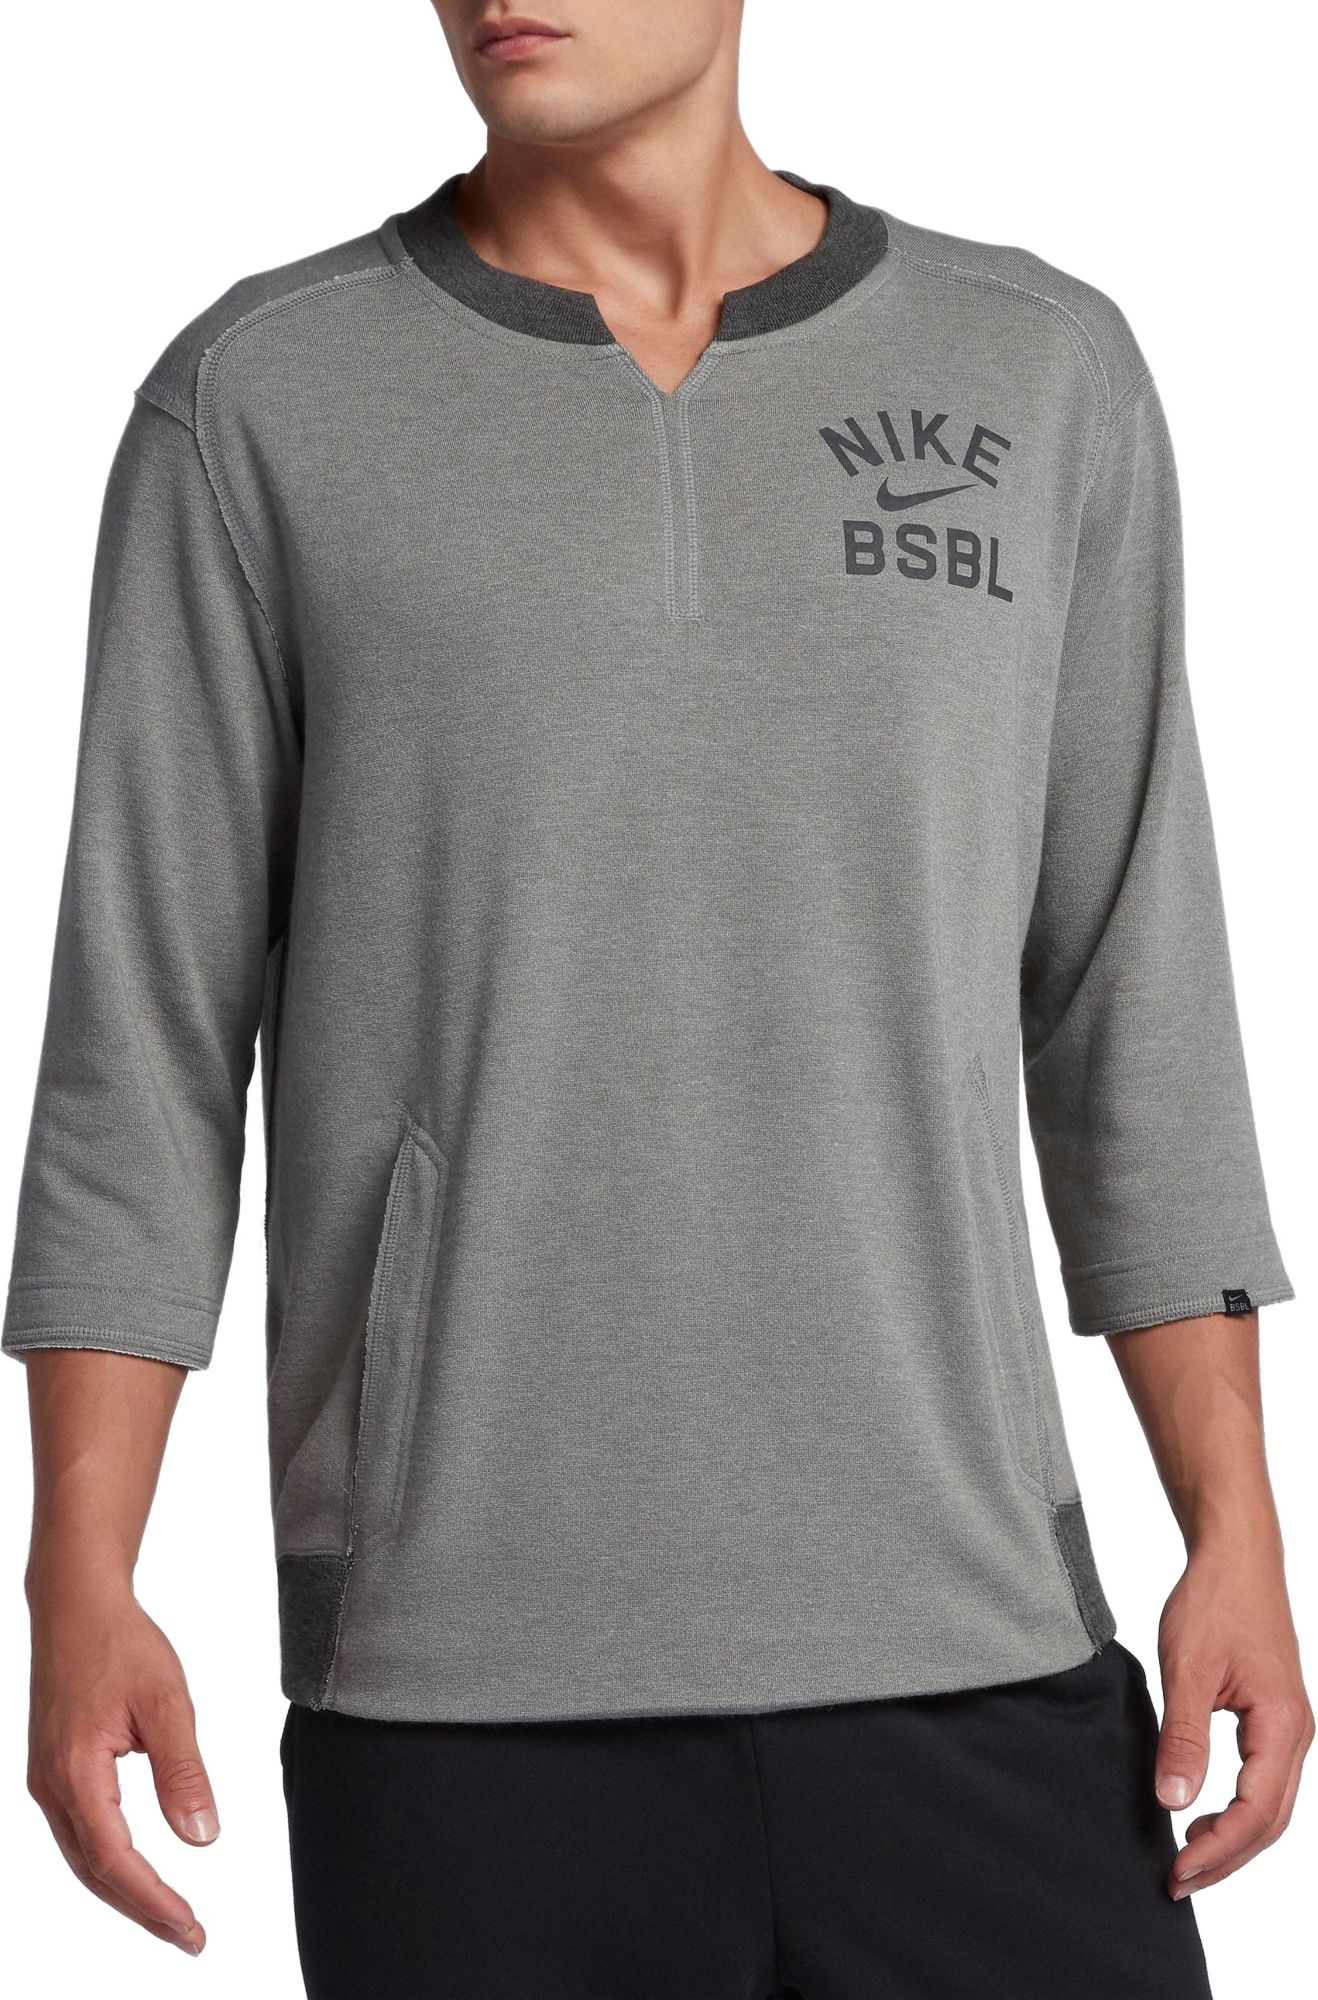 Nike / Men's Dry MLB 3/4 Sleeve Baseball T-Shirt